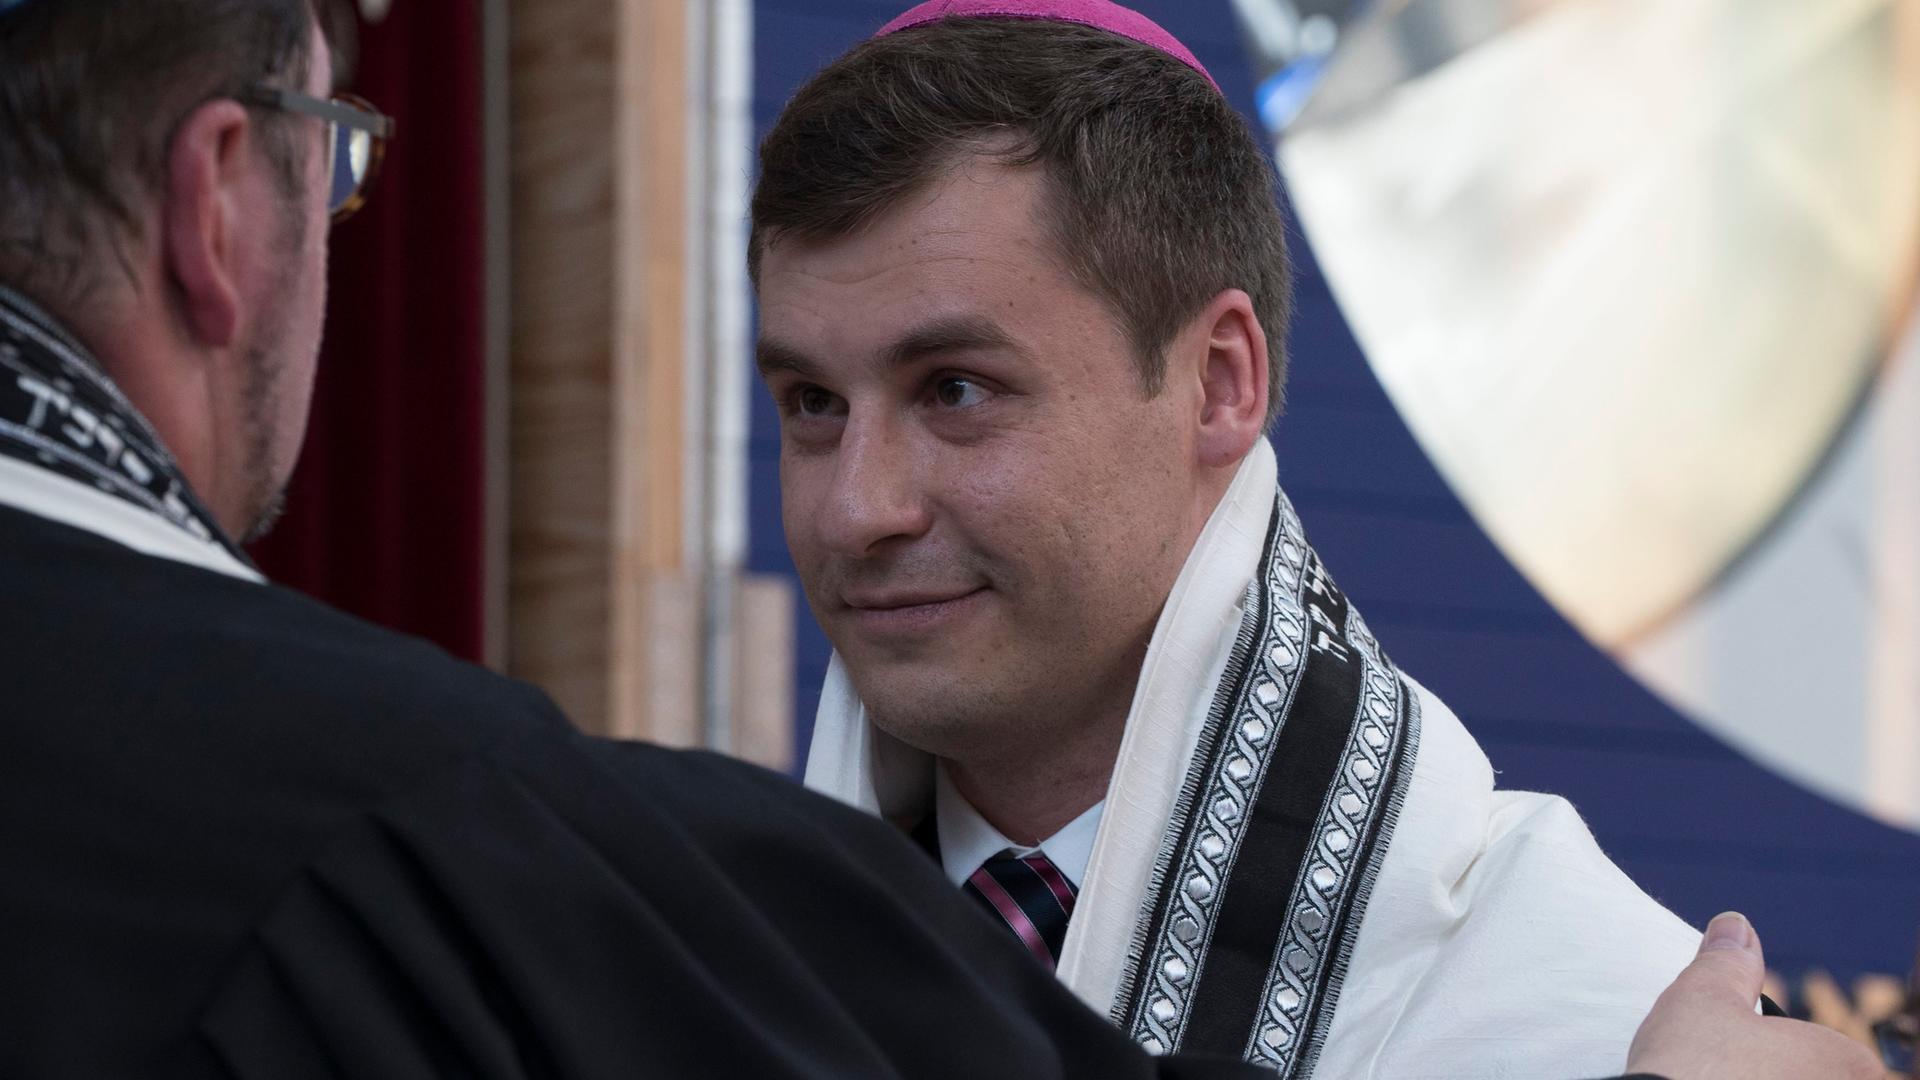 Rabbiner Alexander Grodensky, Absolvent des Abraham Geiger Kollegs an der Universität Potsdam, nimmt seine Ordinationsurkunde in der Synagoge Beit Tikwa in Bielefeld entgegen (Aufnahme vom 31.8.2015).